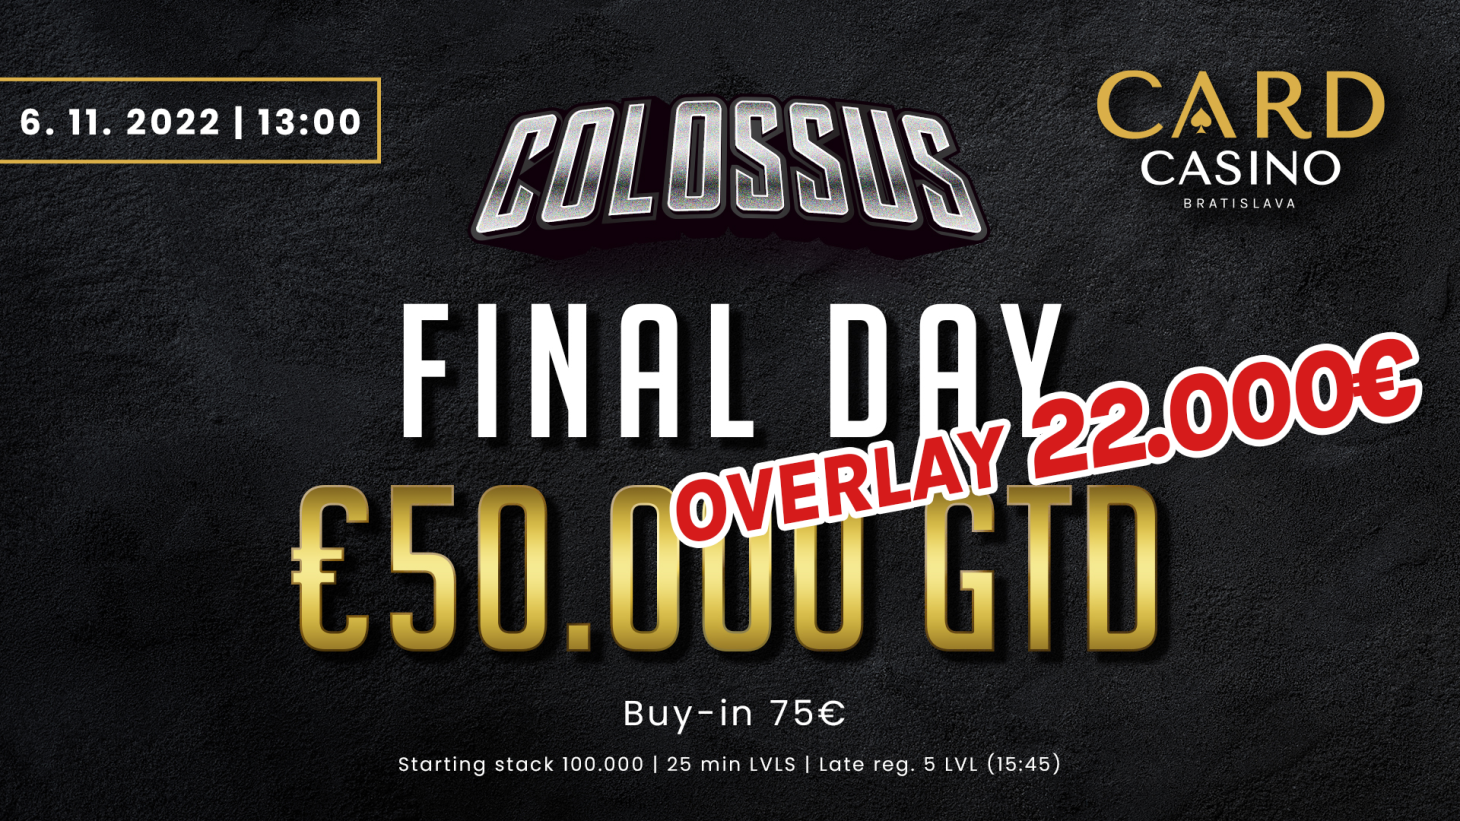 Colossus hlási OVERLAY 22.000€. Do turnaja sa dá naskočiť aj vo Final Day do 15:45